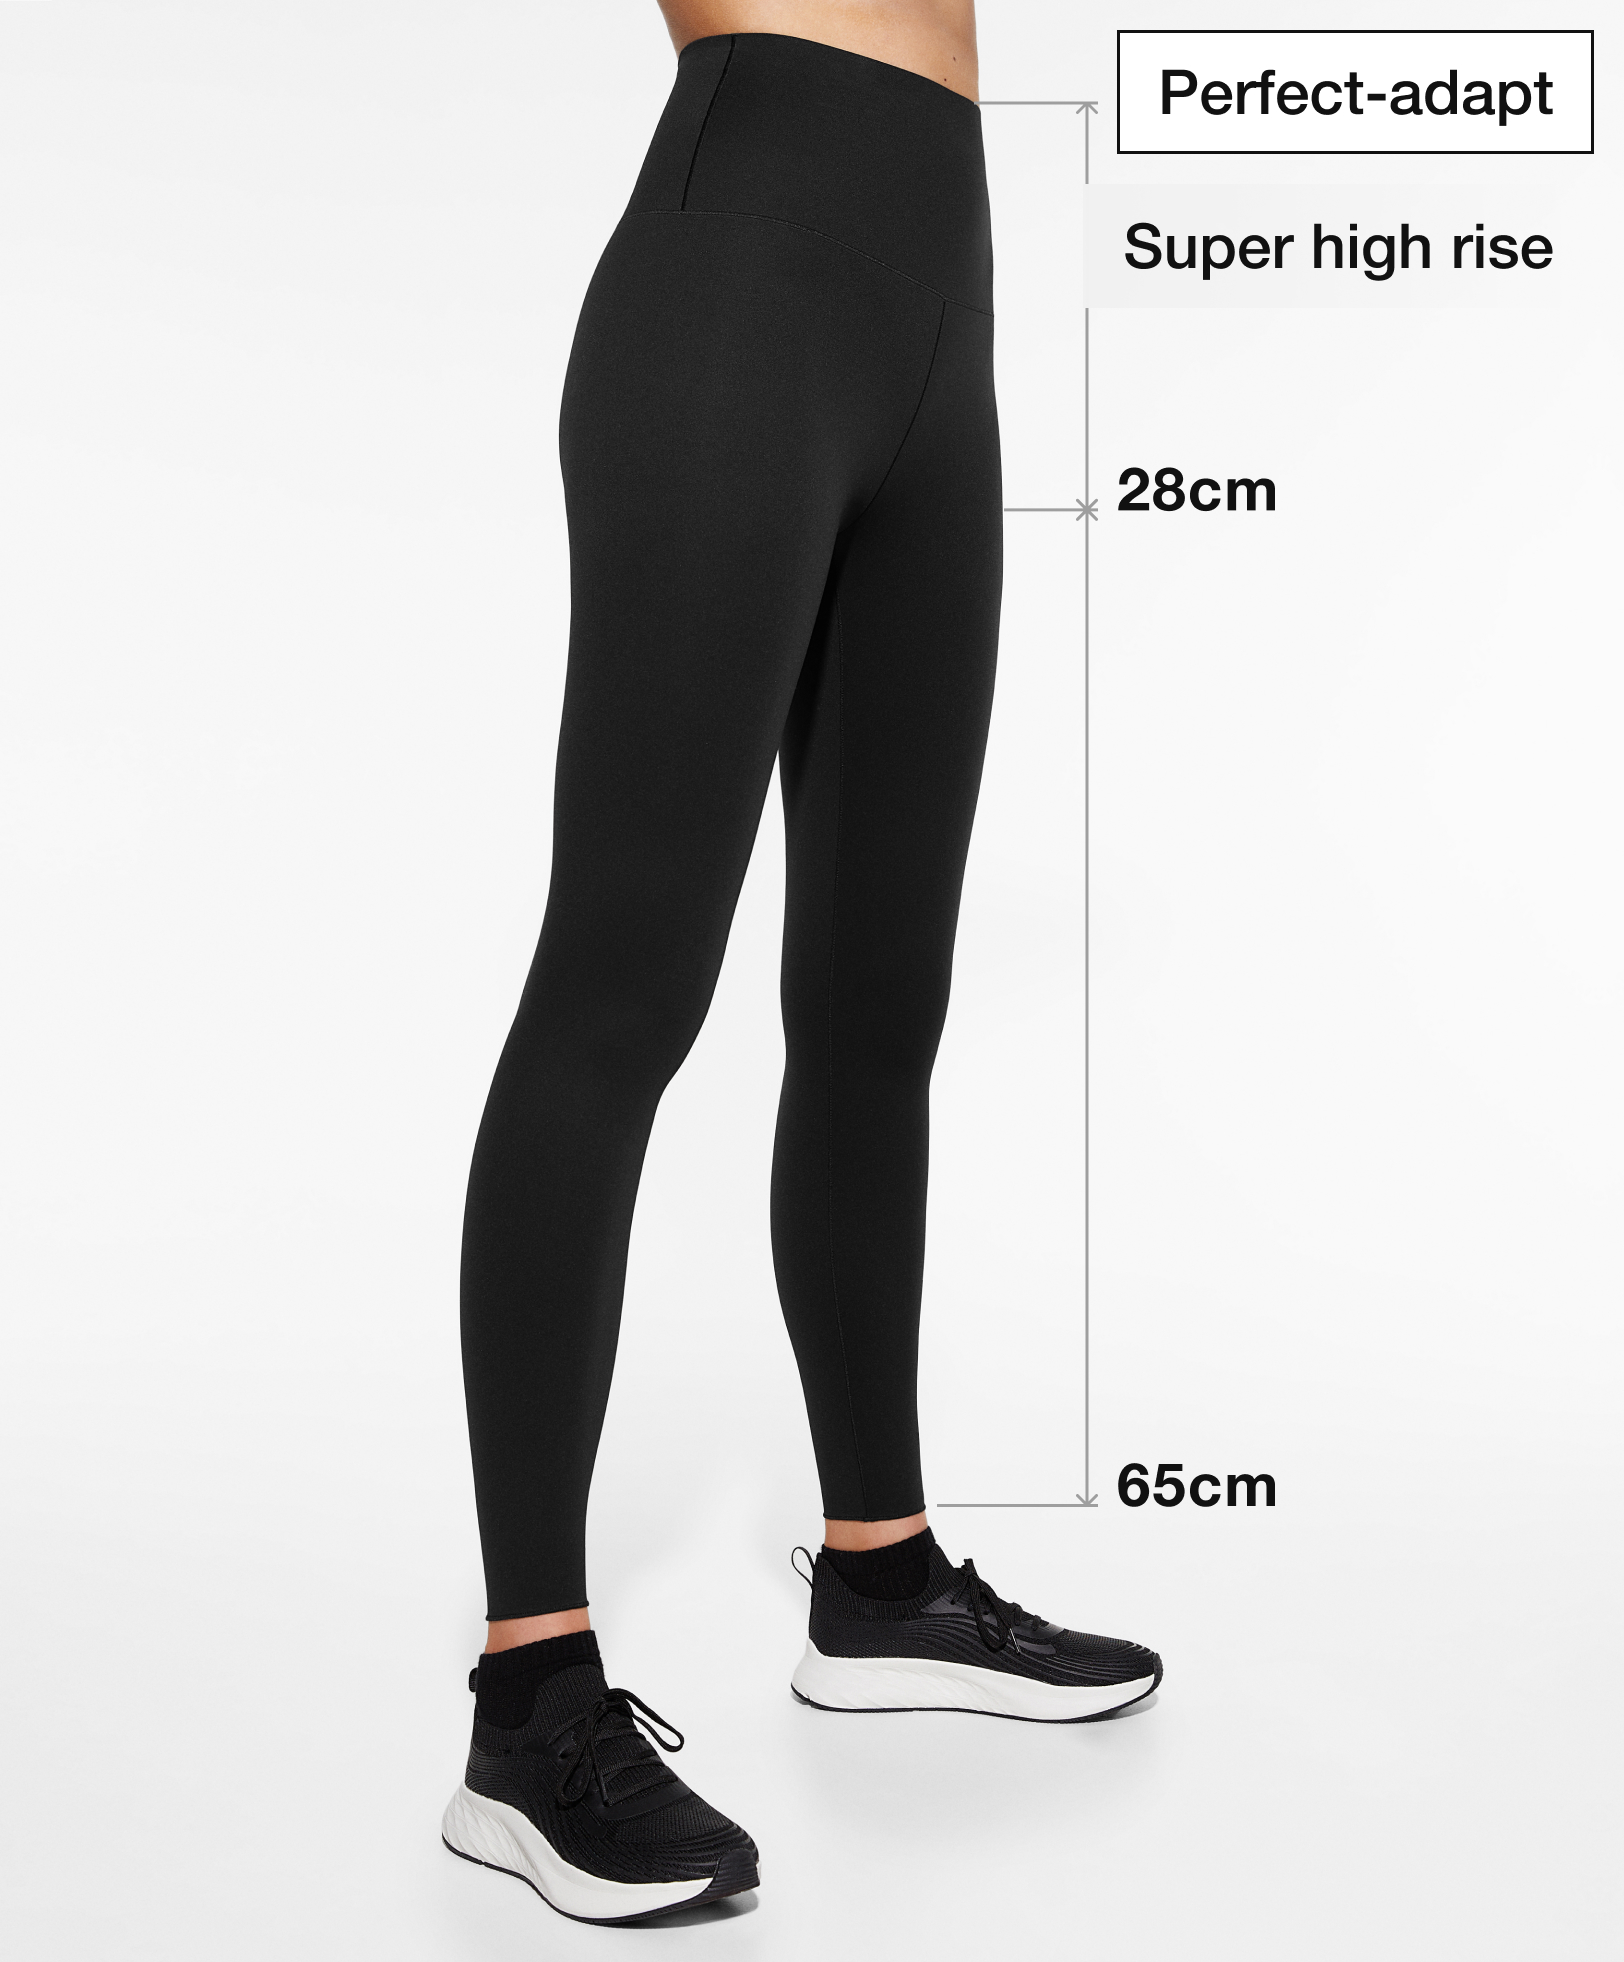 super-high-rise 65cm ankle-length leggings